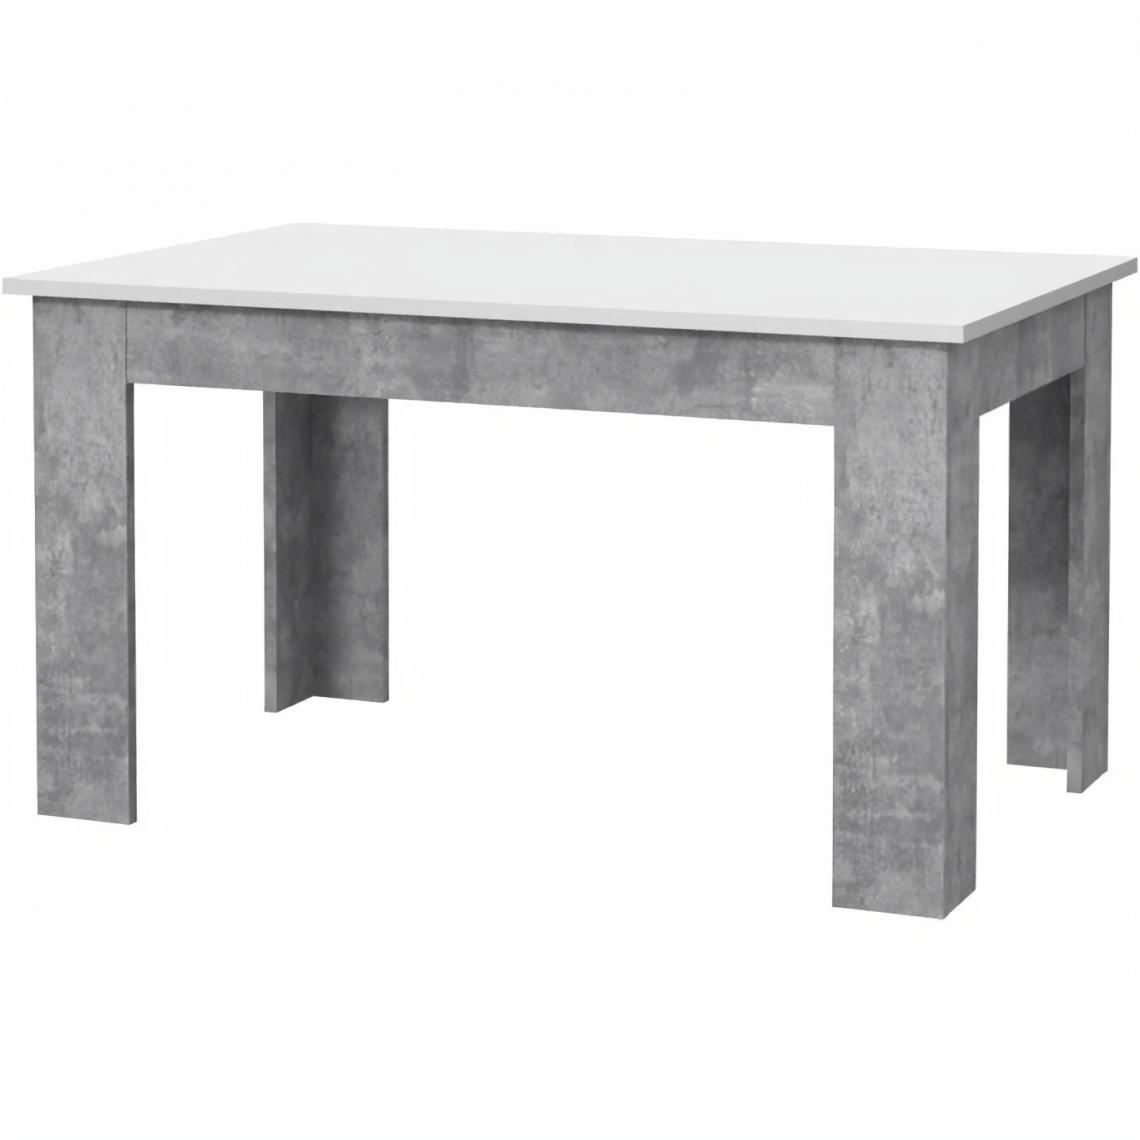 Sans Marque - PILVI Table a manger - Blanc et beton gris clair - L 140 x I90 x H 75 cm - Tables à manger